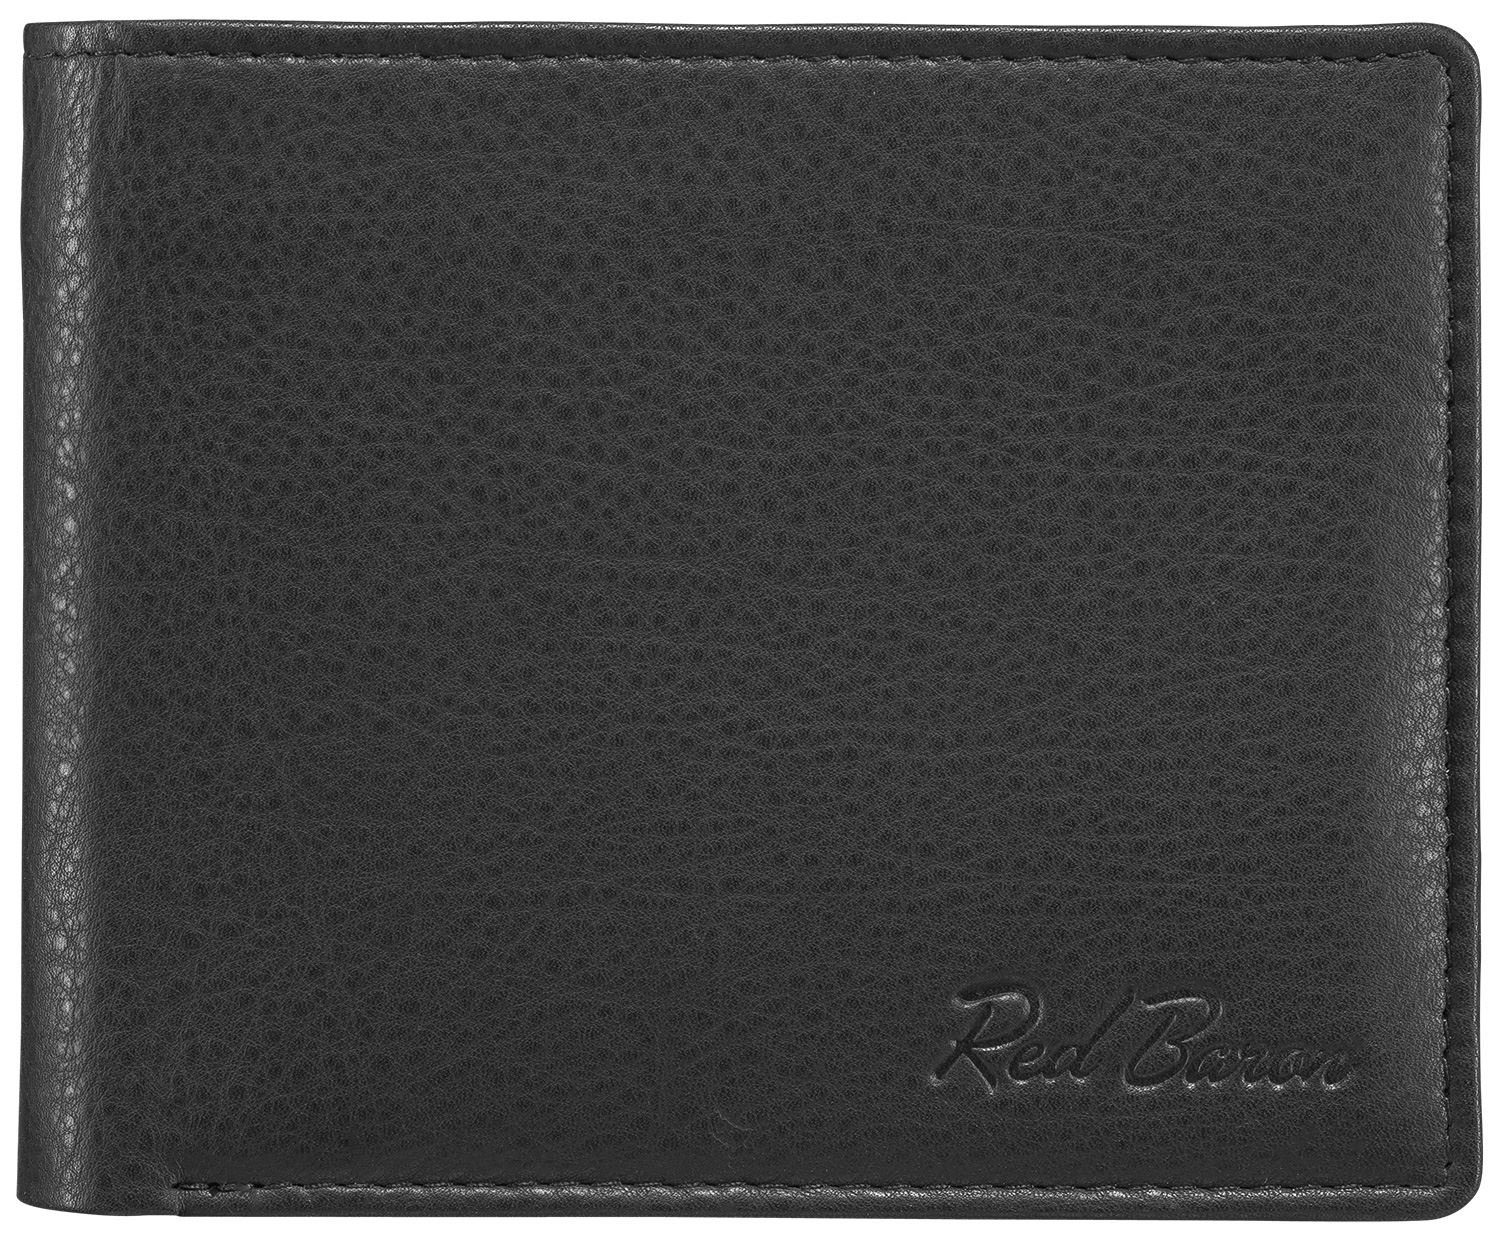 Baron Druckknopf Red RB-WT-004-01, Münzfach Kreditkartenfächer, Geldbörse mit